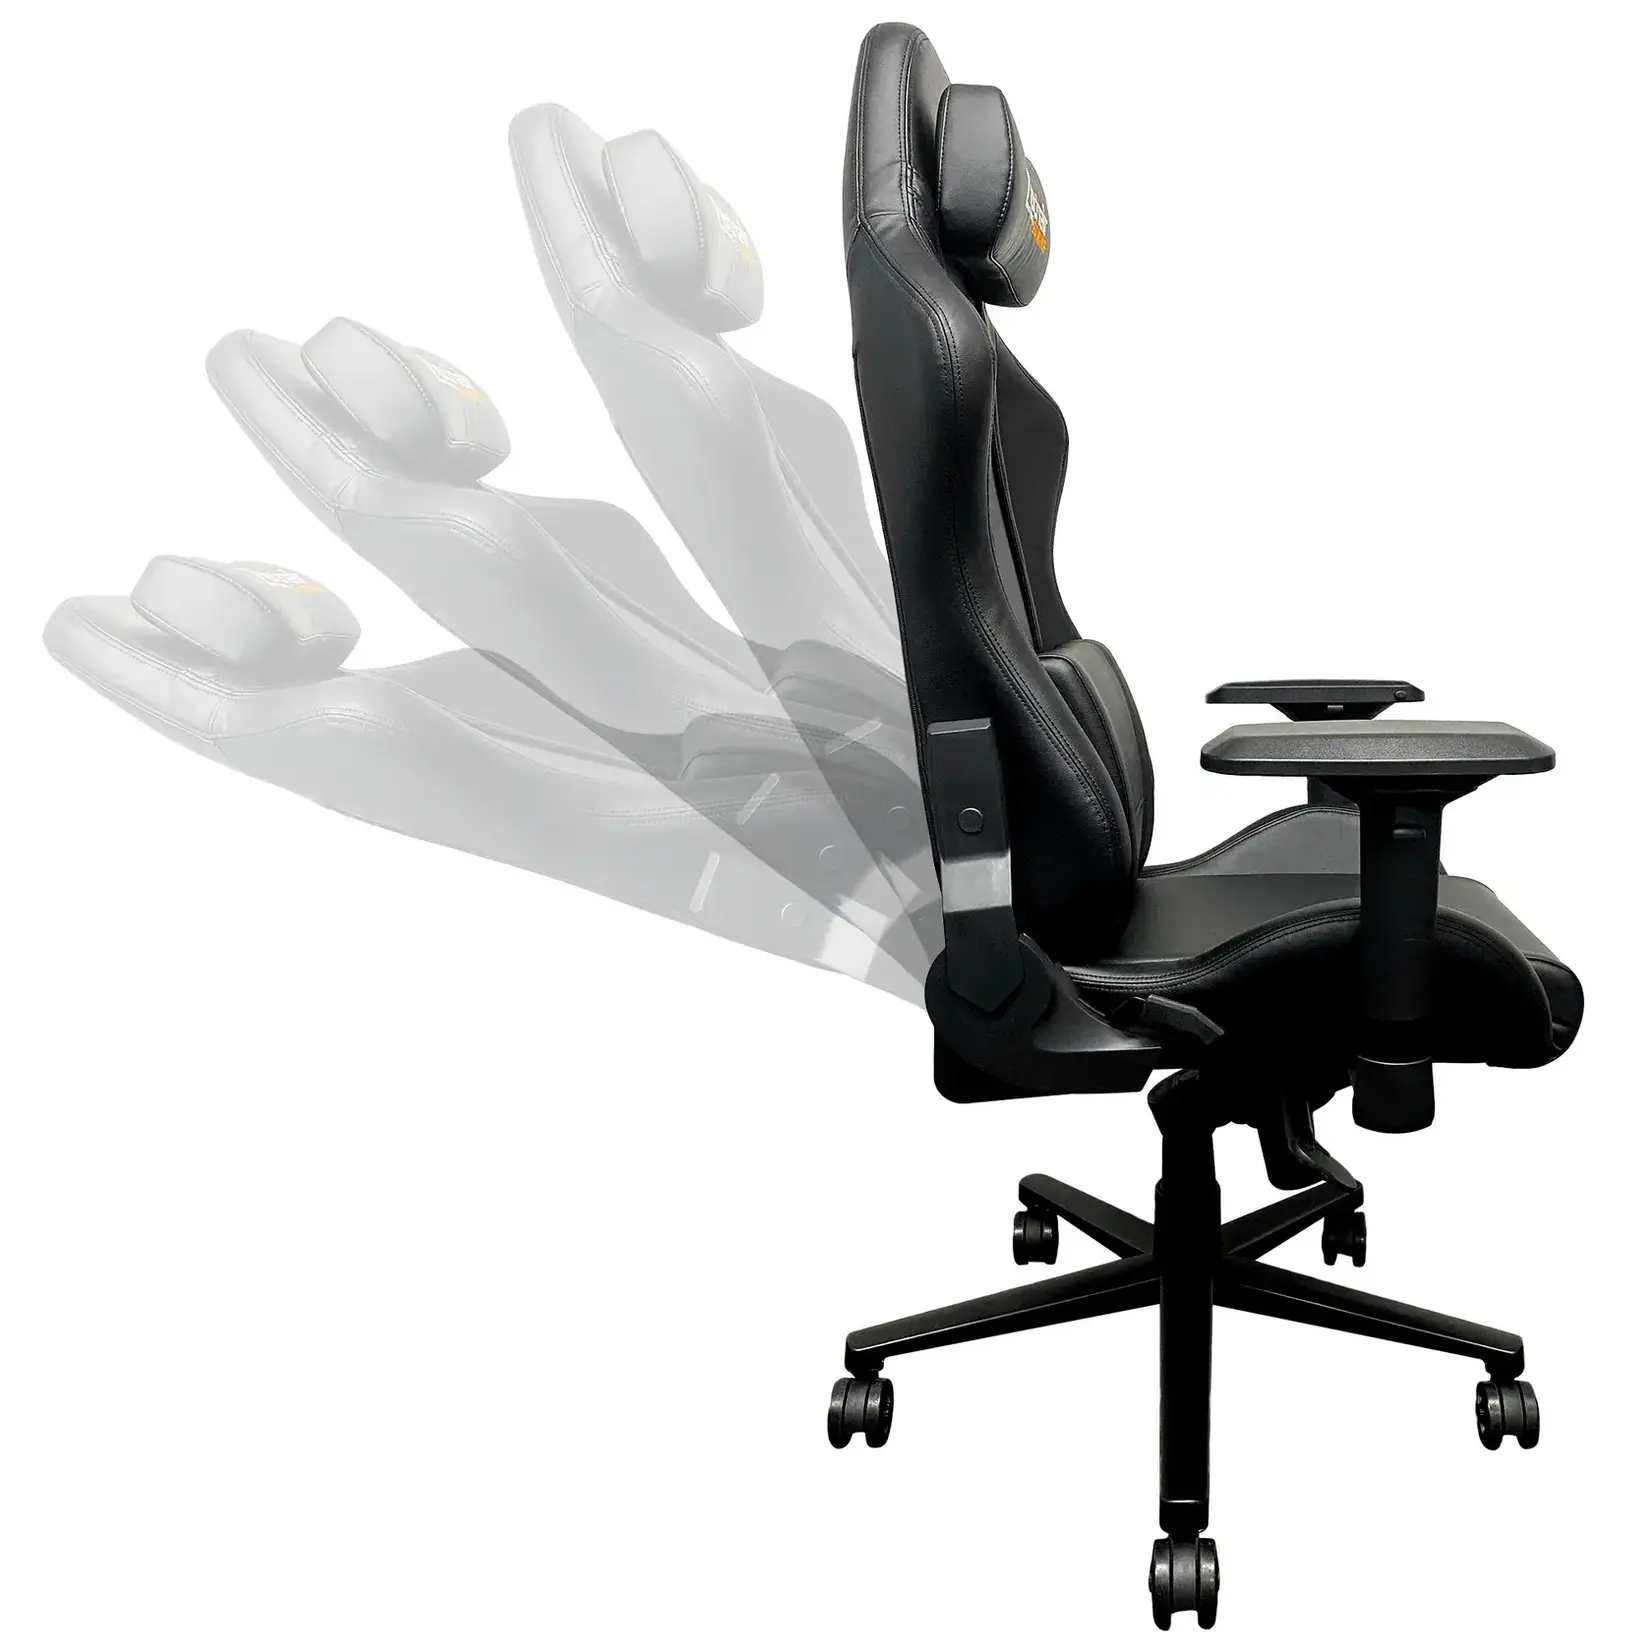 DreamSeat Xpression Pro Chair